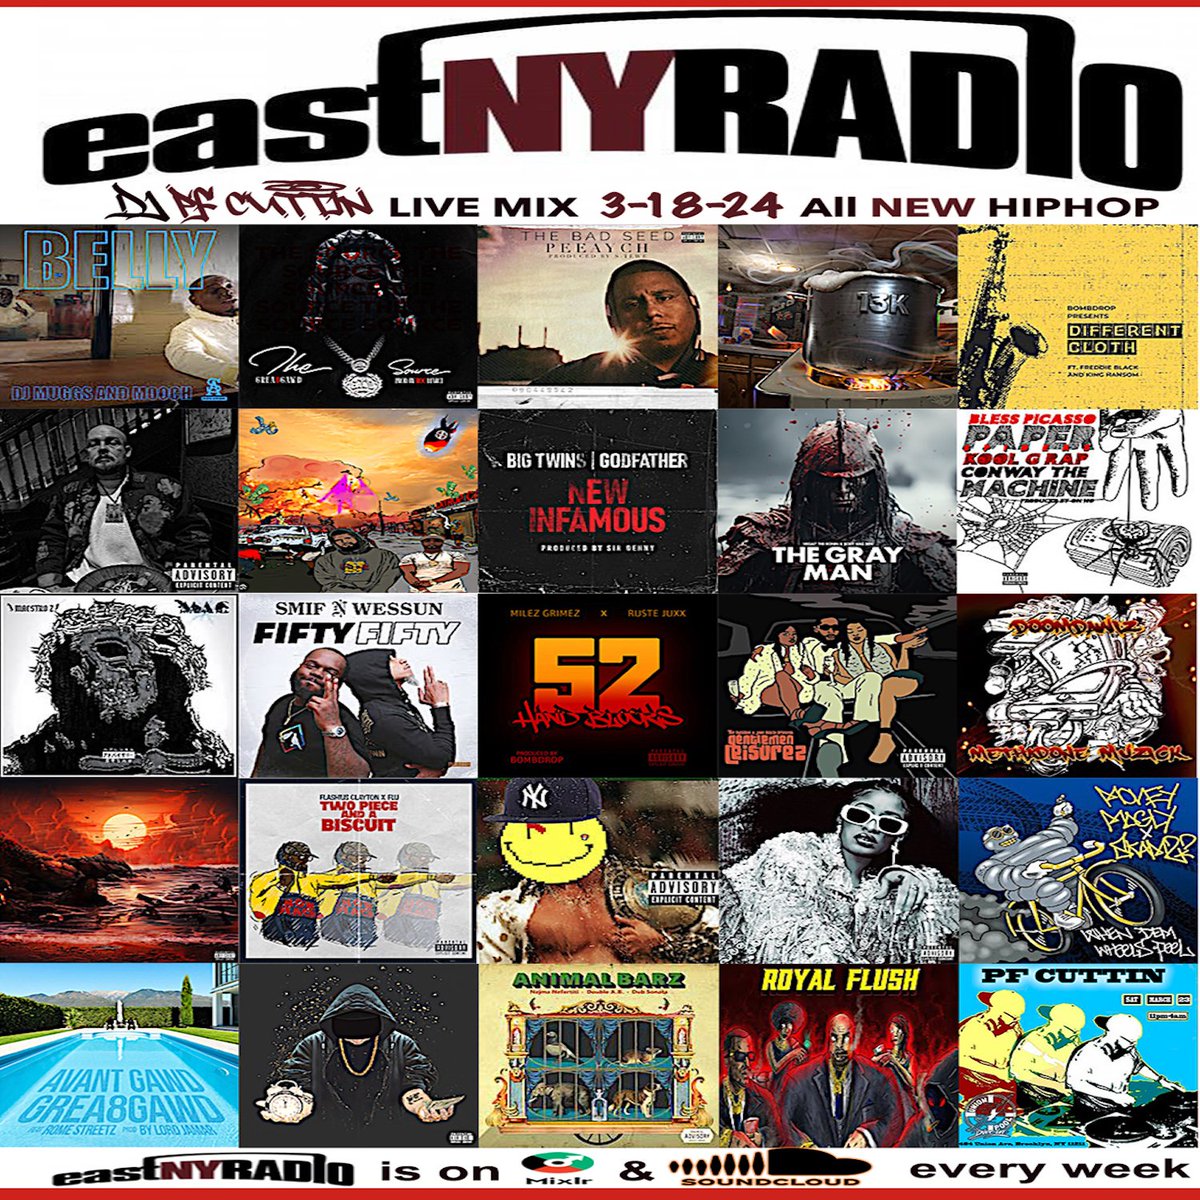 ENYR 3-18-24 mix (@PFCUTTIN): pfcuttin.bandcamp.com/album/eastnyra…